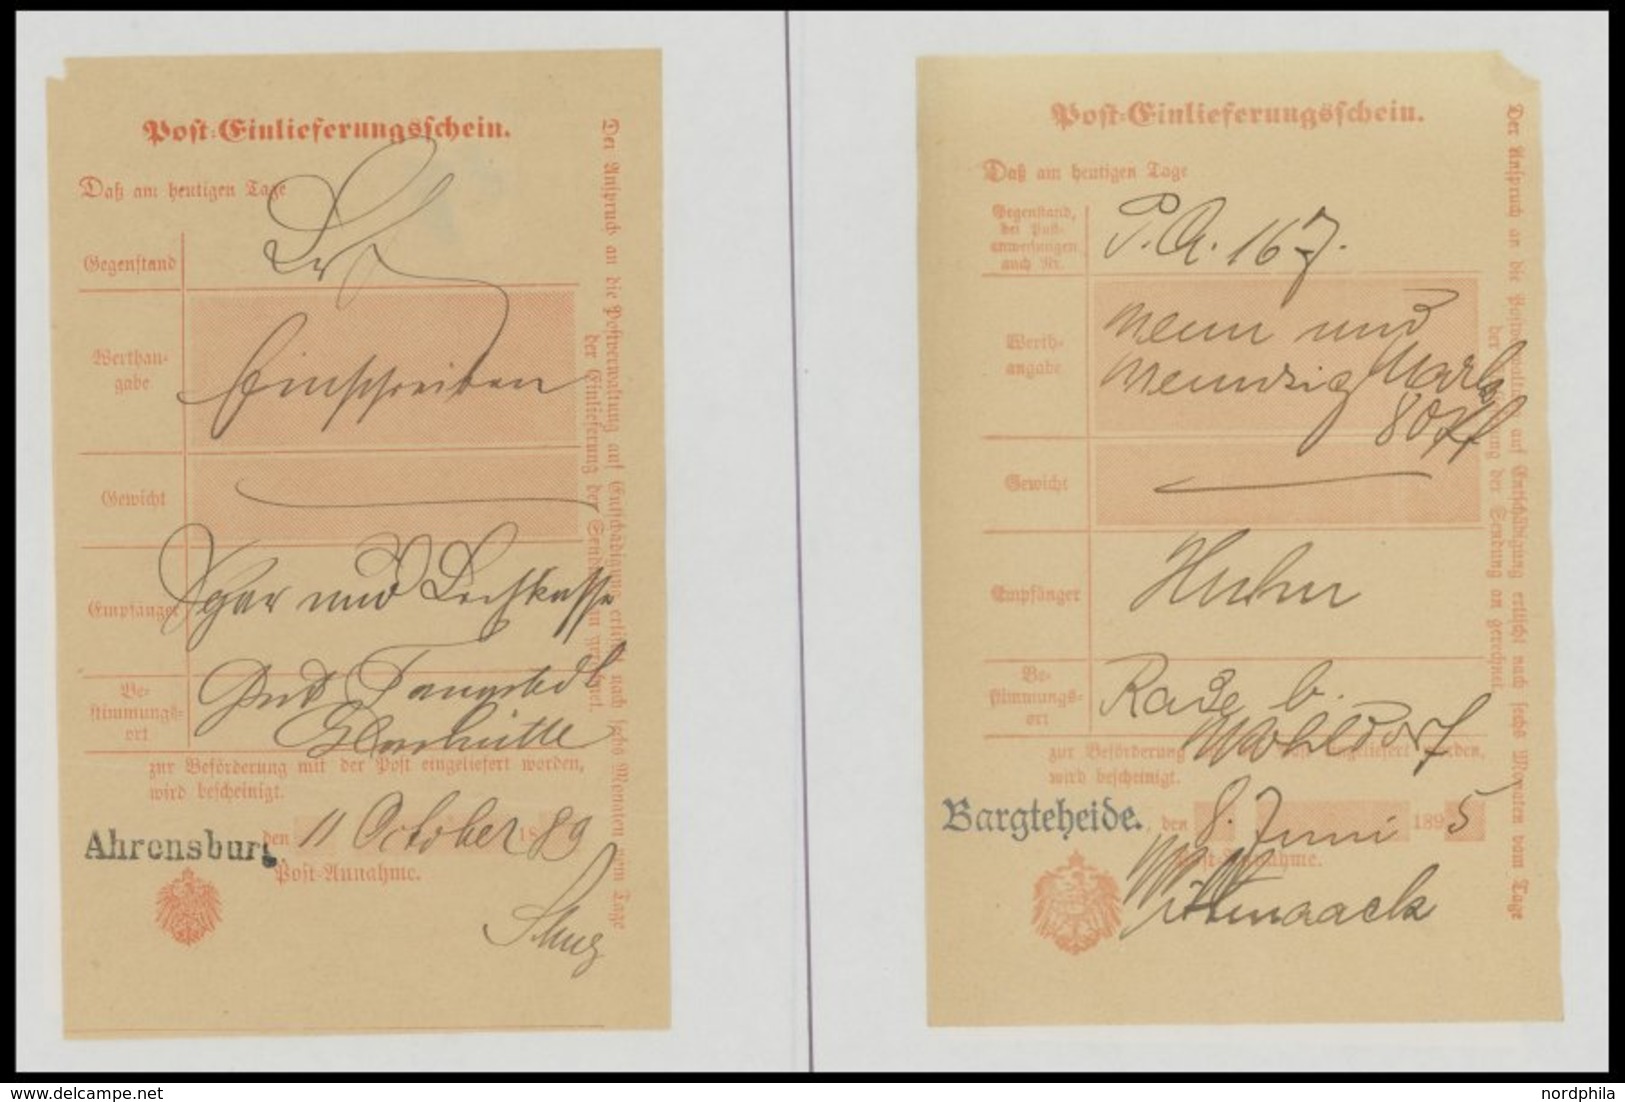 SCHLESWIG-HOLSTEIN 1889-1916, 8 Verschiedene Post-Einlieferungsscheine Von Ahrensburg, Bargteheide, Barmstedt Und Pinneb - Schleswig-Holstein